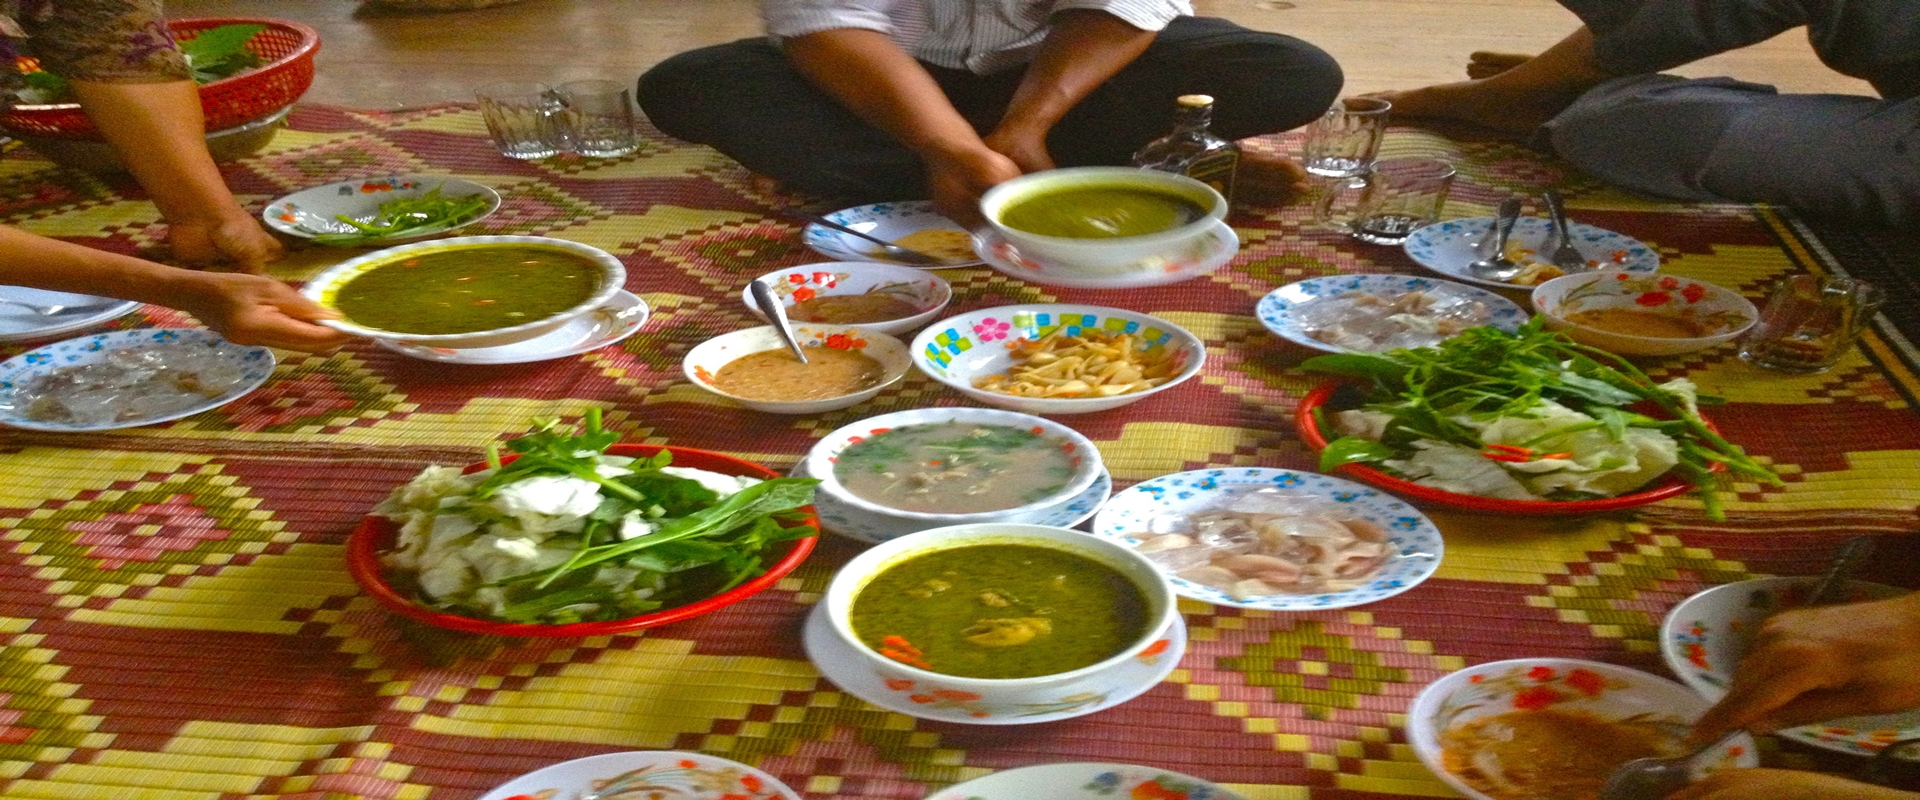 Essen und Trinken in Kambodscha